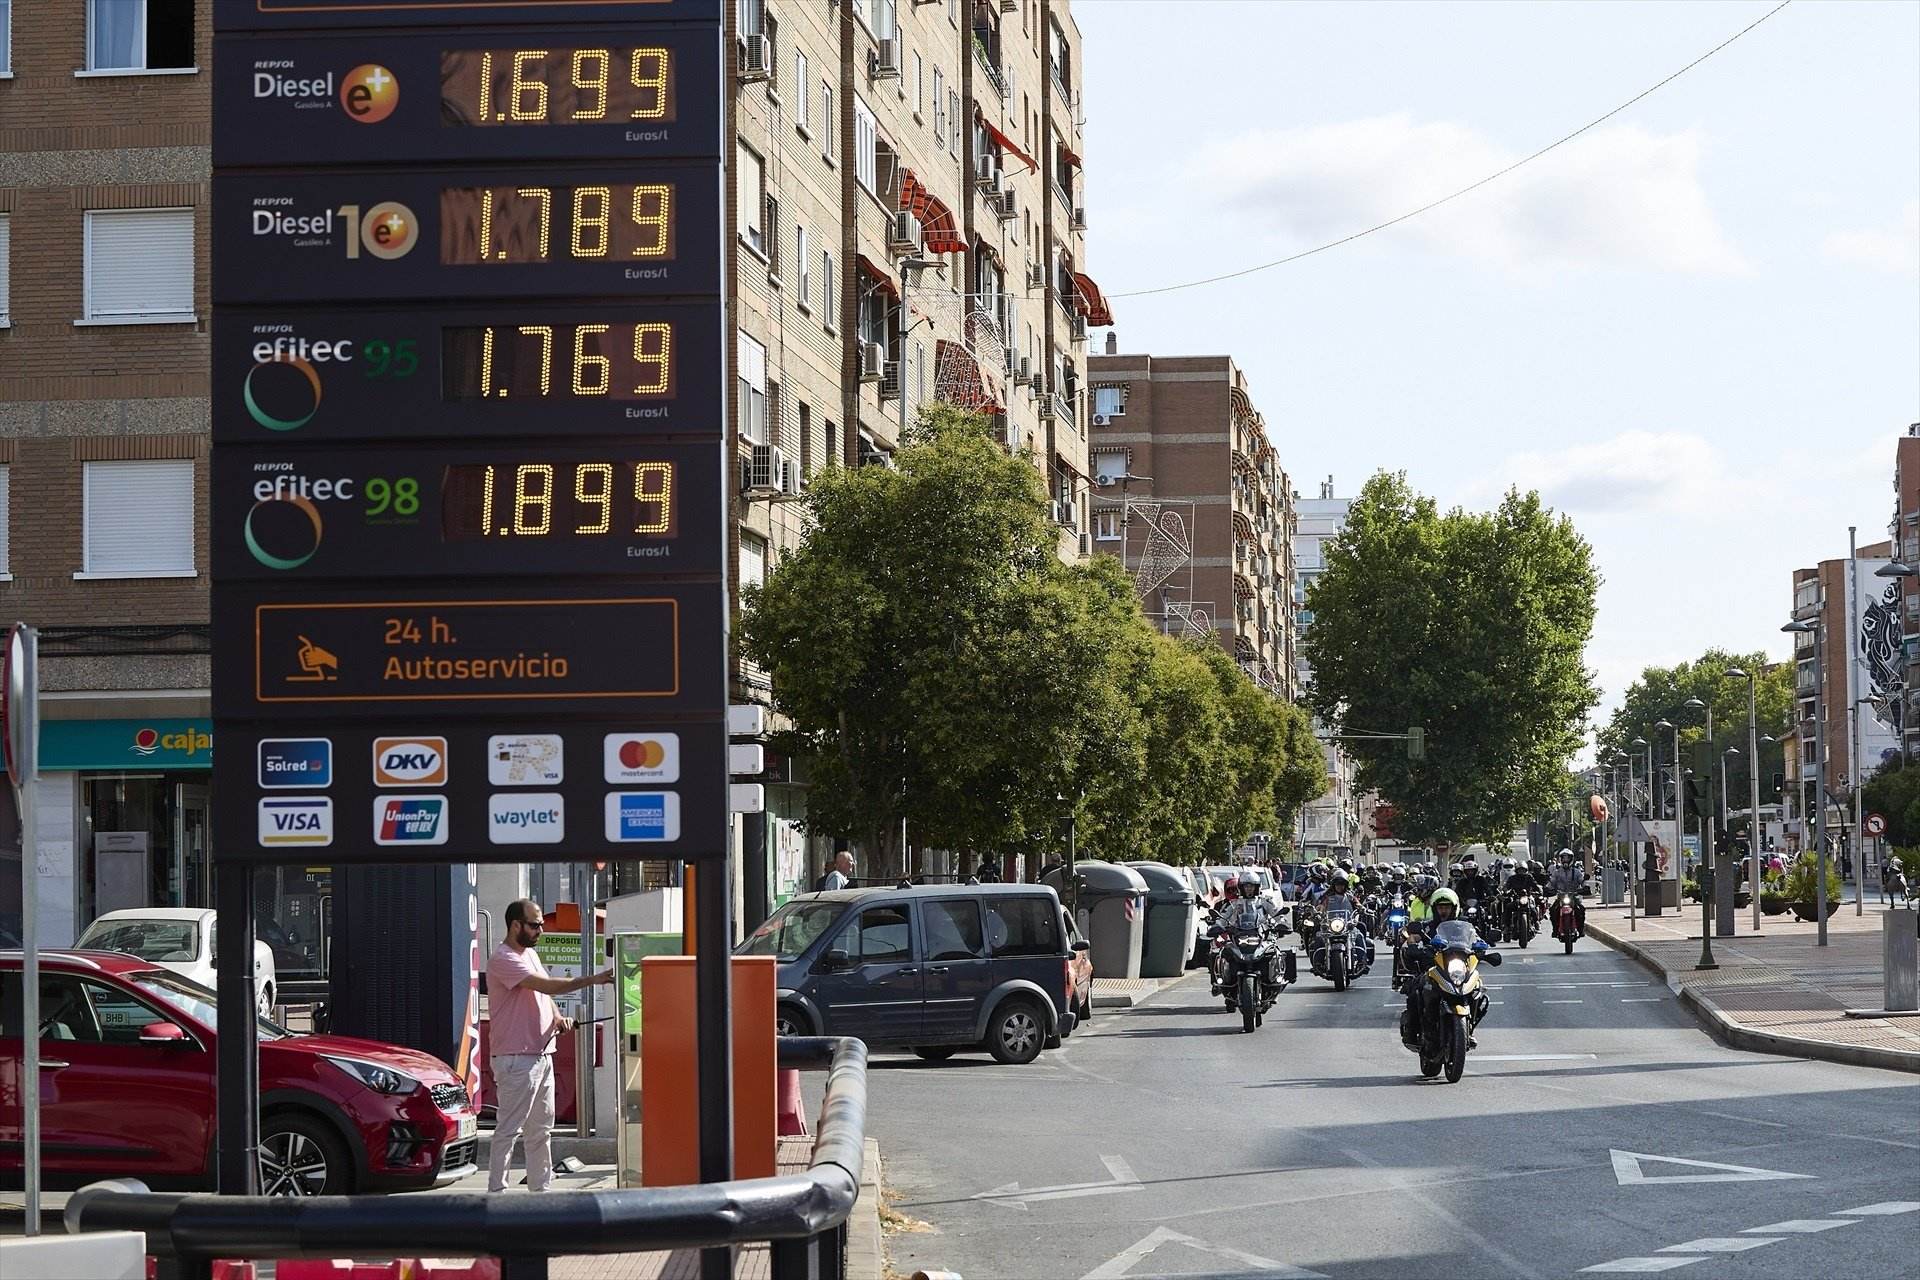 Ahorro de hasta 18 euros al llenar el depósito de gasolina